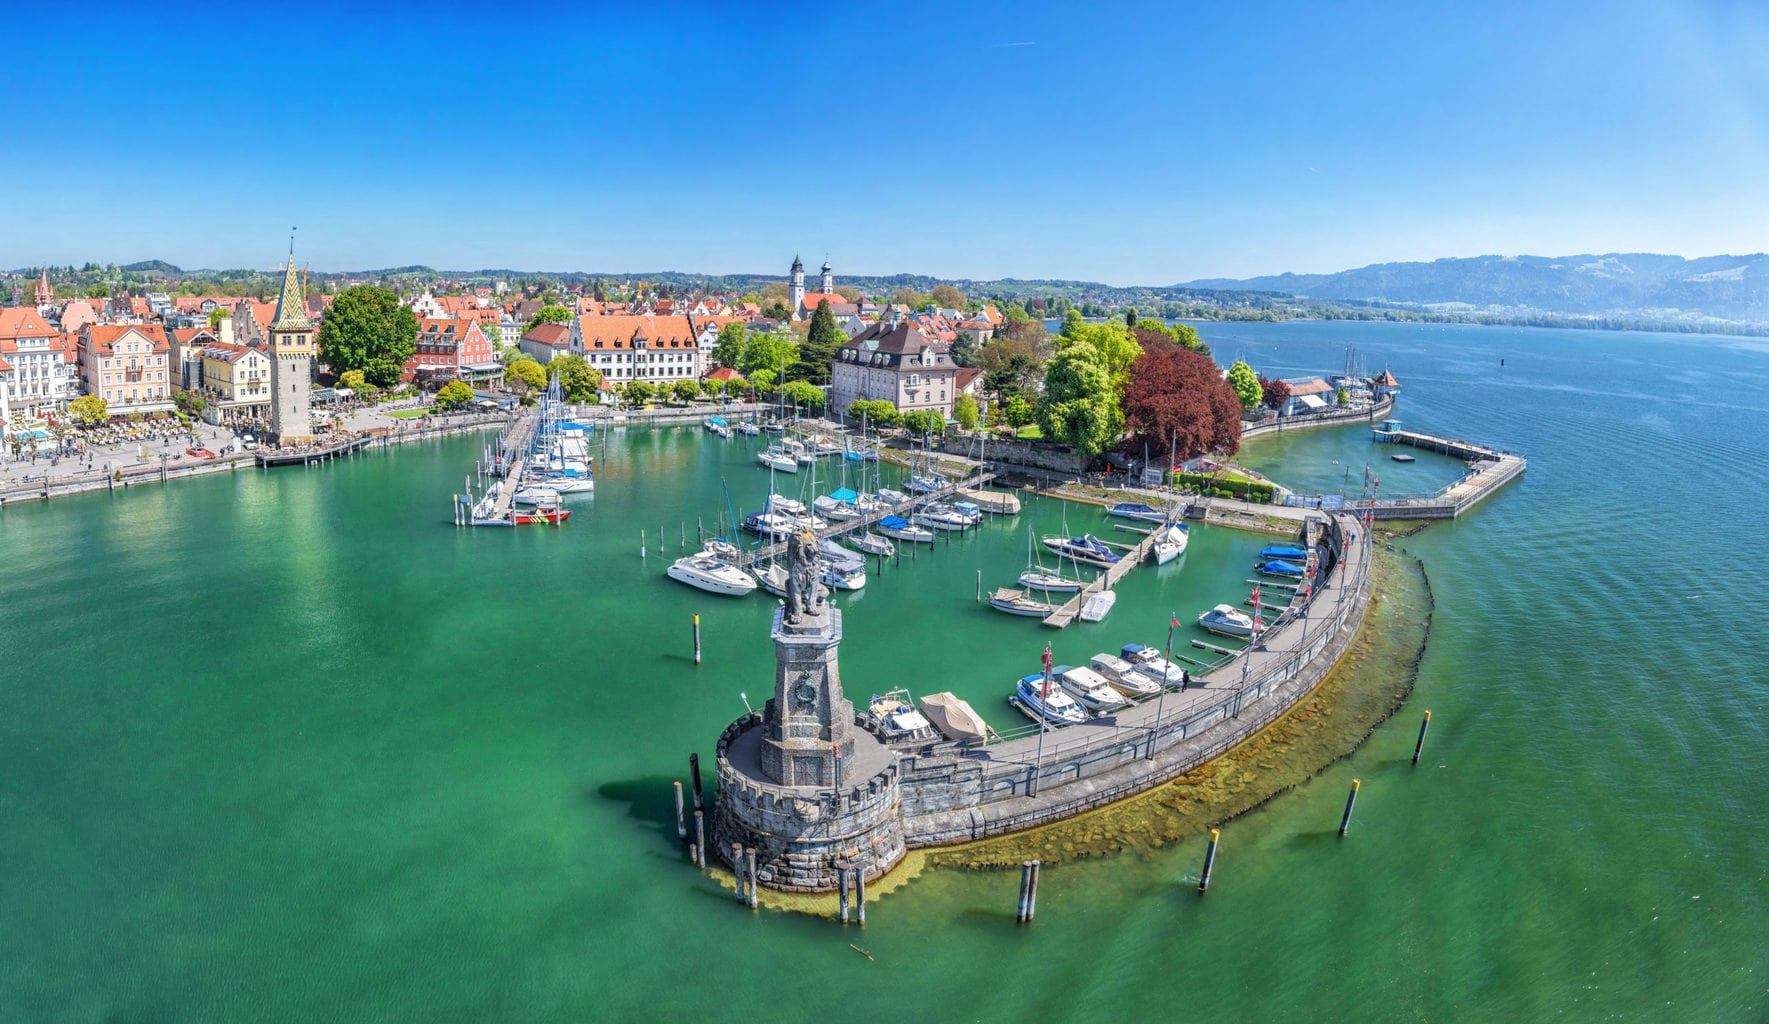 De haven van Lindau aan de Bodensee is een van de 15 populairste bezienswaardigheden in Duitsland